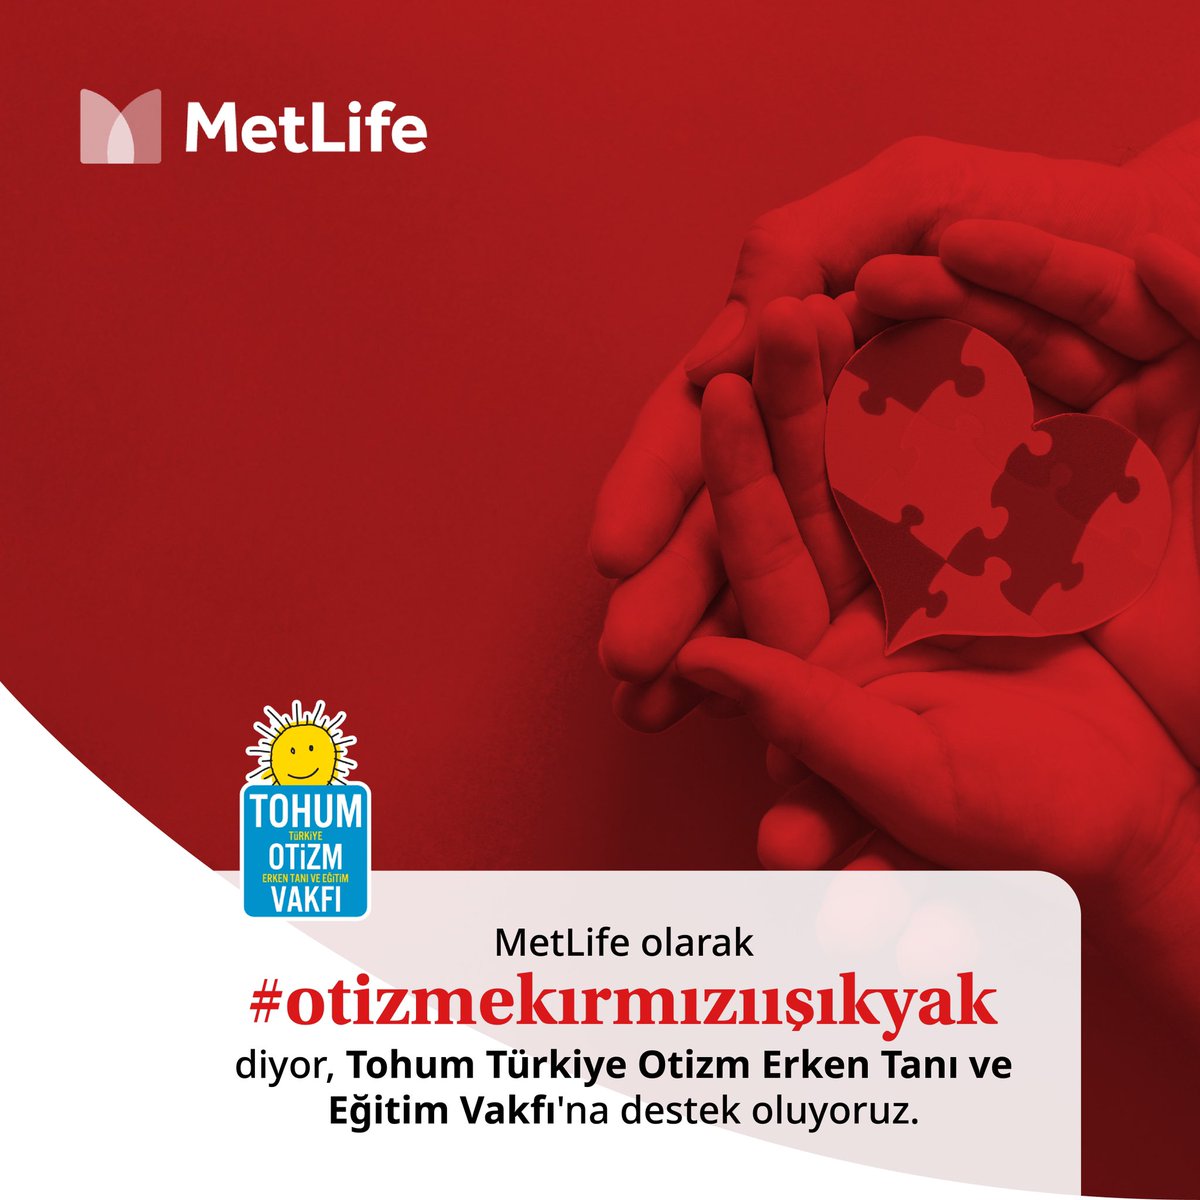 Tohum Türkiye Otizm Erken Tanı ve Eğitim Vakfı'nın 2 Nisan Otizm Farkındalık Günü'ne özel olarak düzenlediği kampanyasına destekçiyiz! Siz de #otizmekırmızıışıkyak hashtagini kullanın, farkındalığın bir parçası olun. ❤